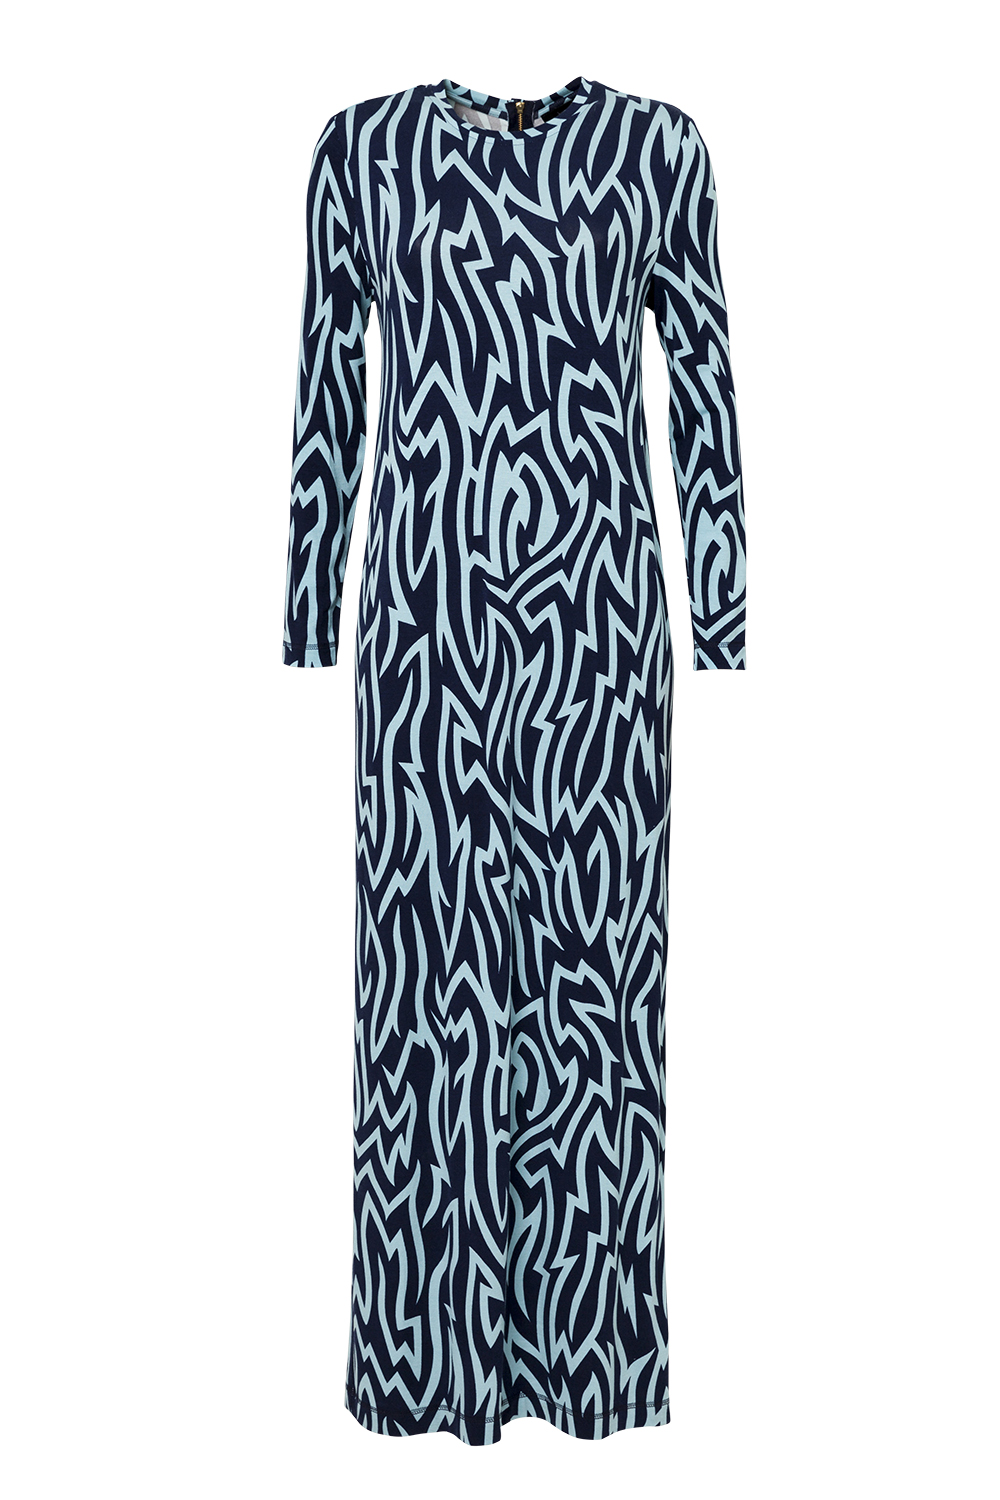 Dress, $345, by Karen Walker.